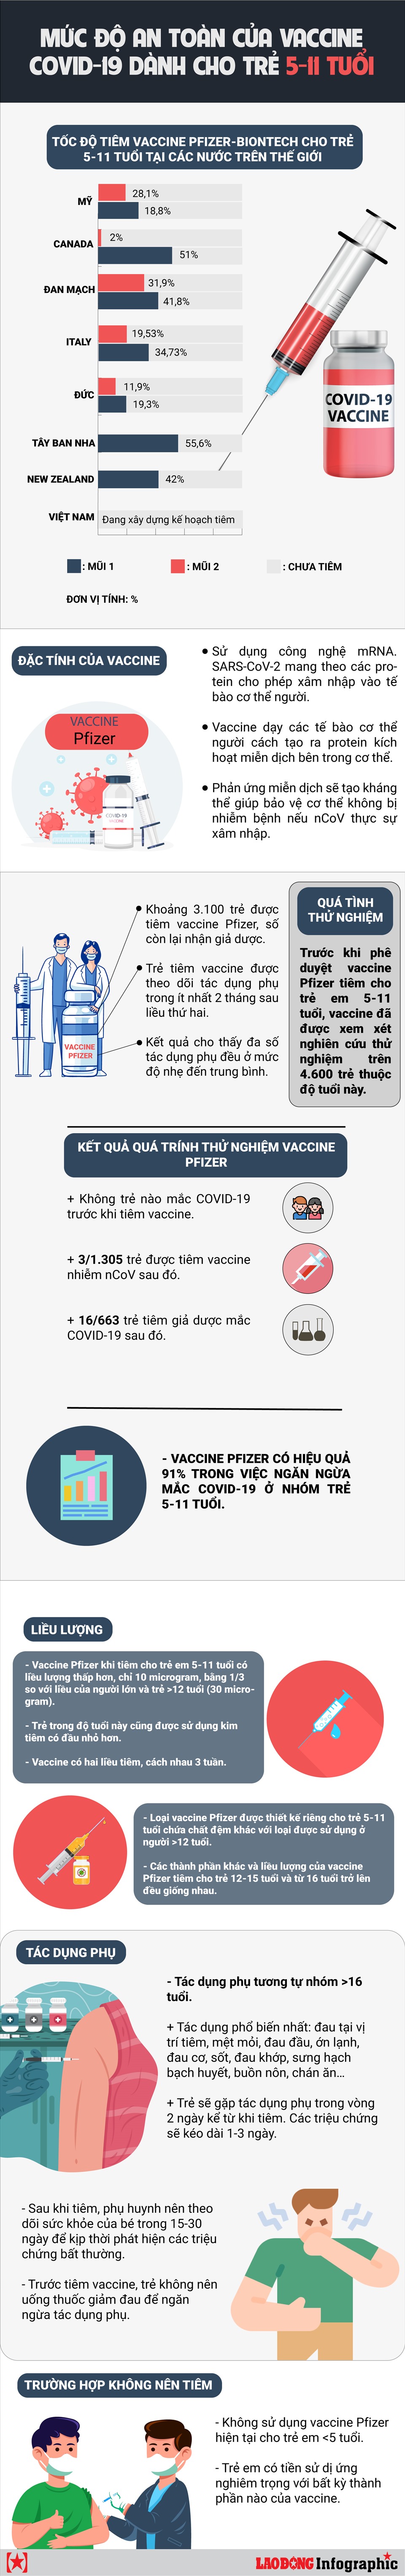 Mức độ an toàn của vắc xin COVID-19 dành cho trẻ 5-11 tuổi - Ảnh 1